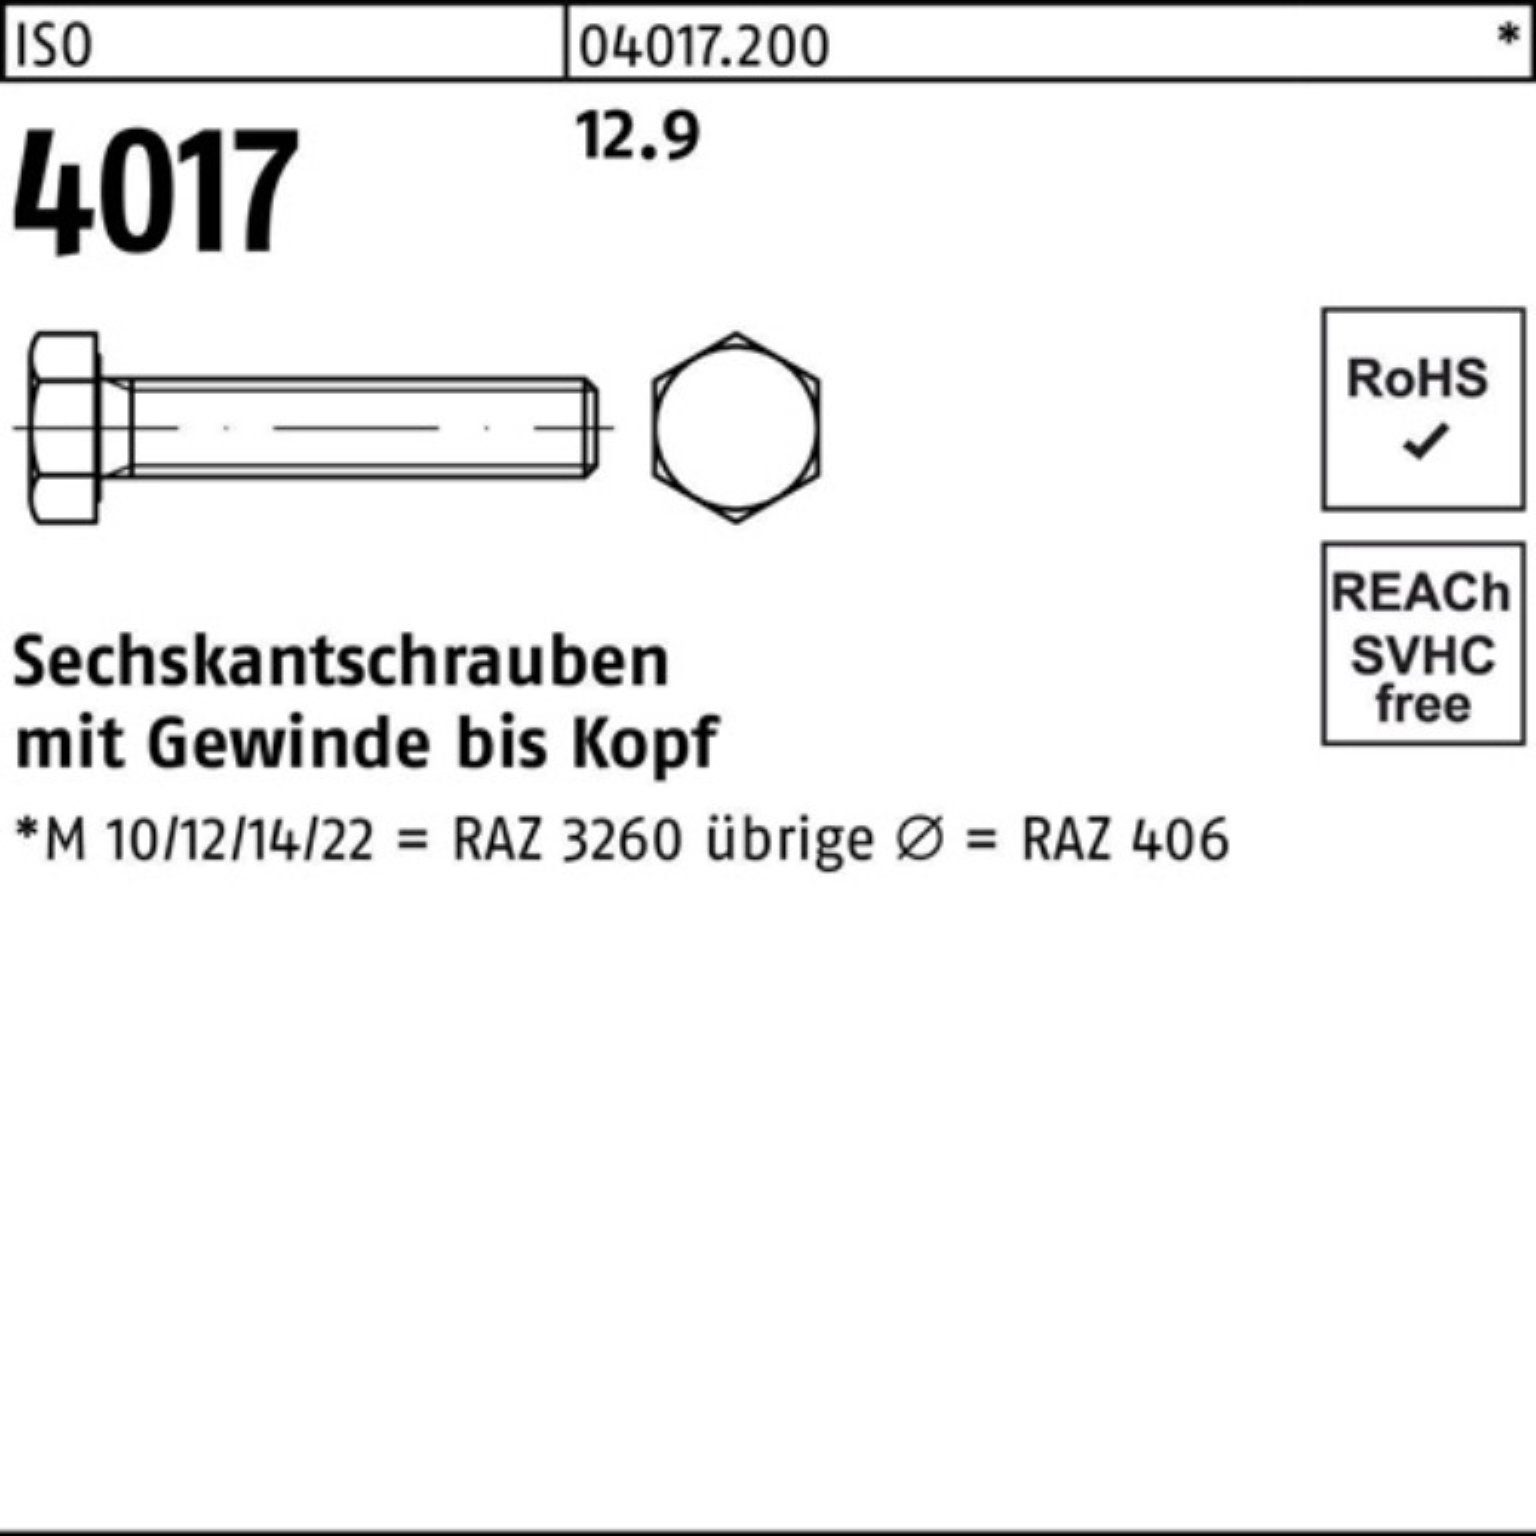 Bufab Sechskantschraube Sechskantschraube Stück Pack VG 200 200er 12.9 ISO 40 50 4017 M8x ISO